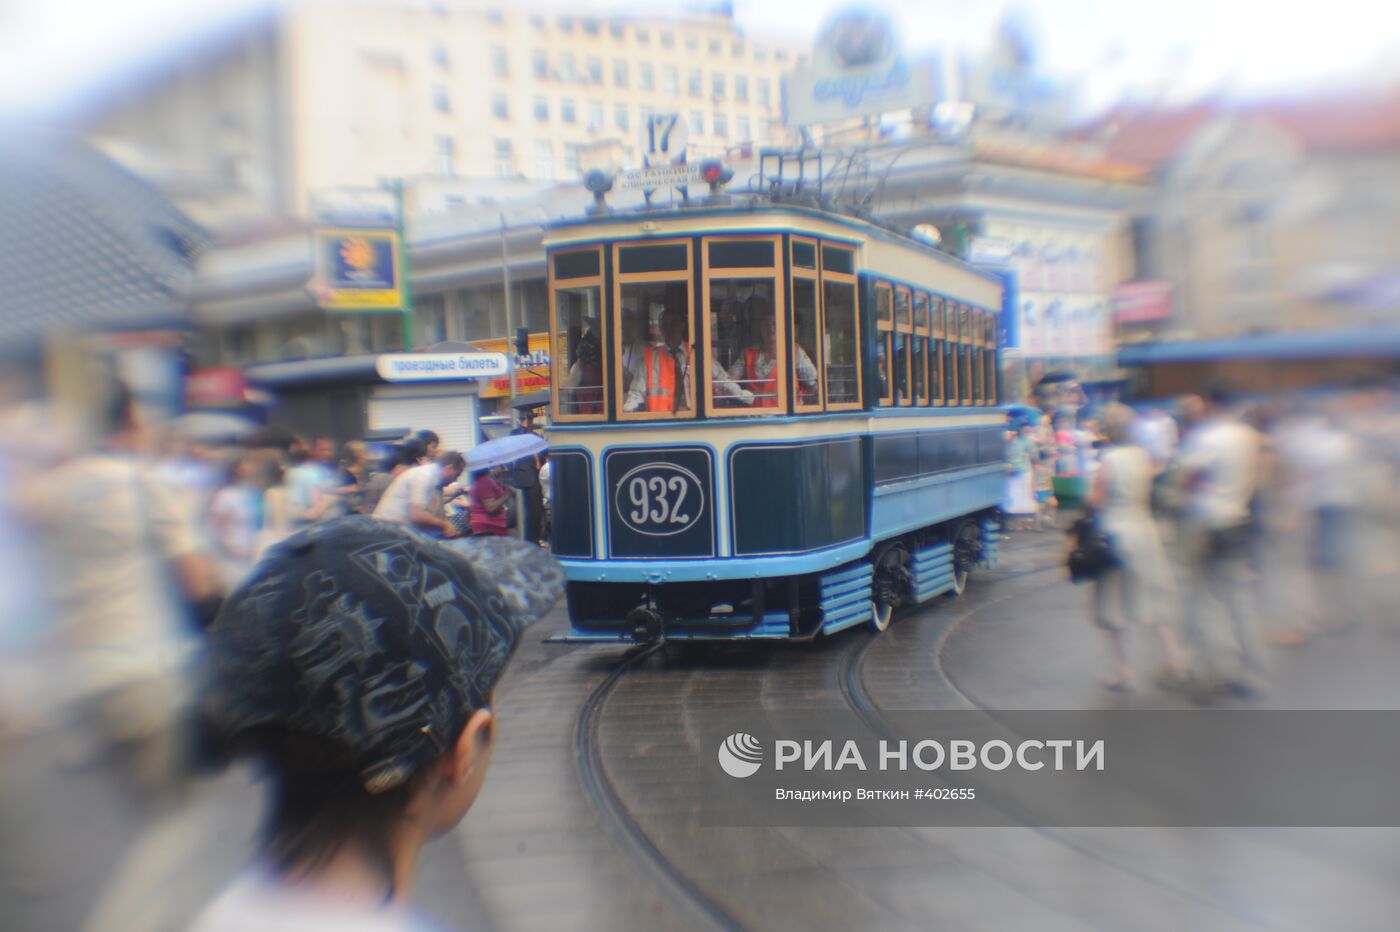 Парад уникальных ретро-трамваев в Москве